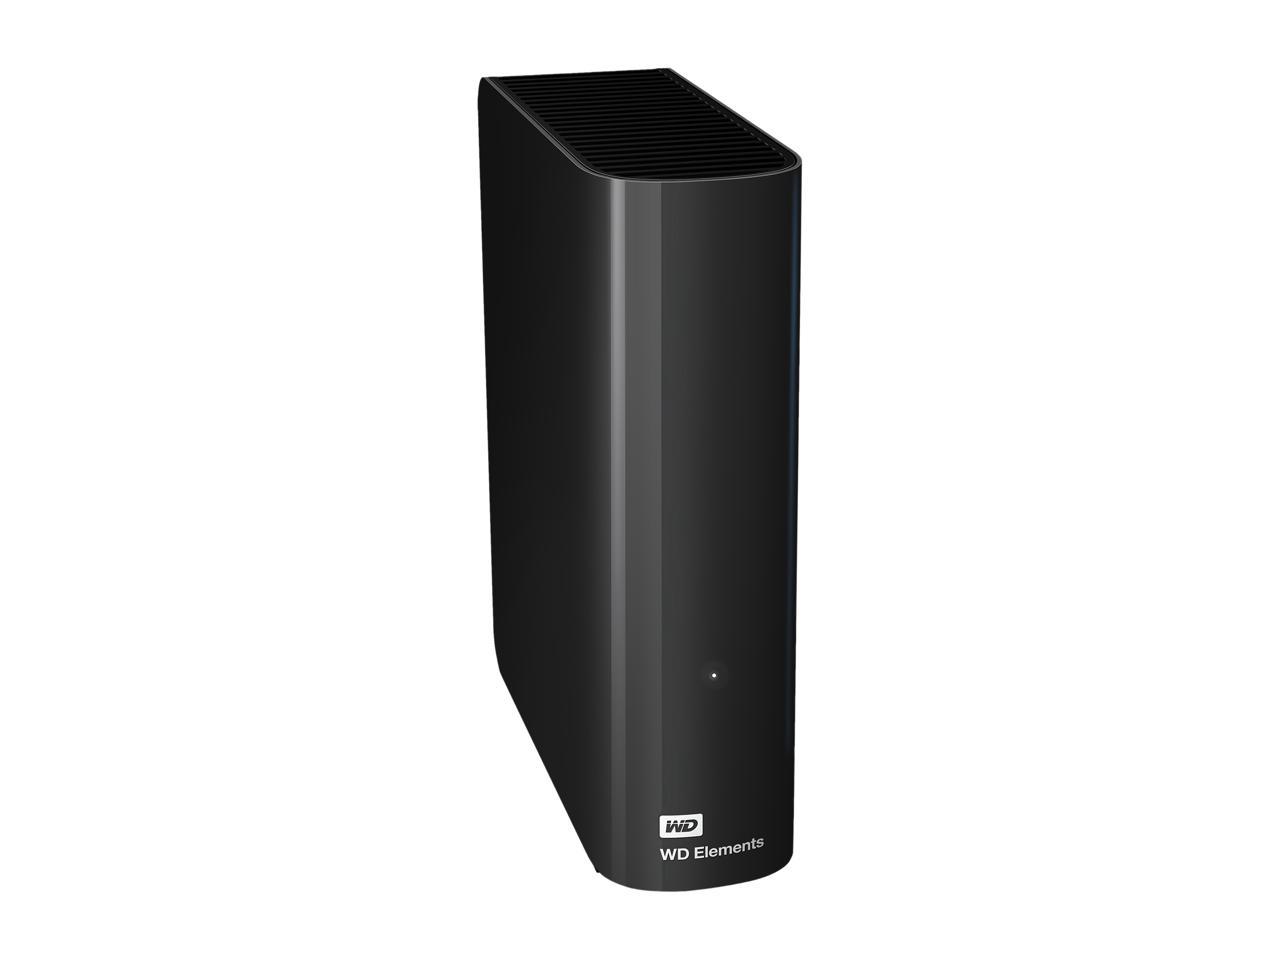 WD Elements 10TB USB 3.0 Desktop External Hard Drive WDBWLG0100HBK-NESN Black - image 2 of 7